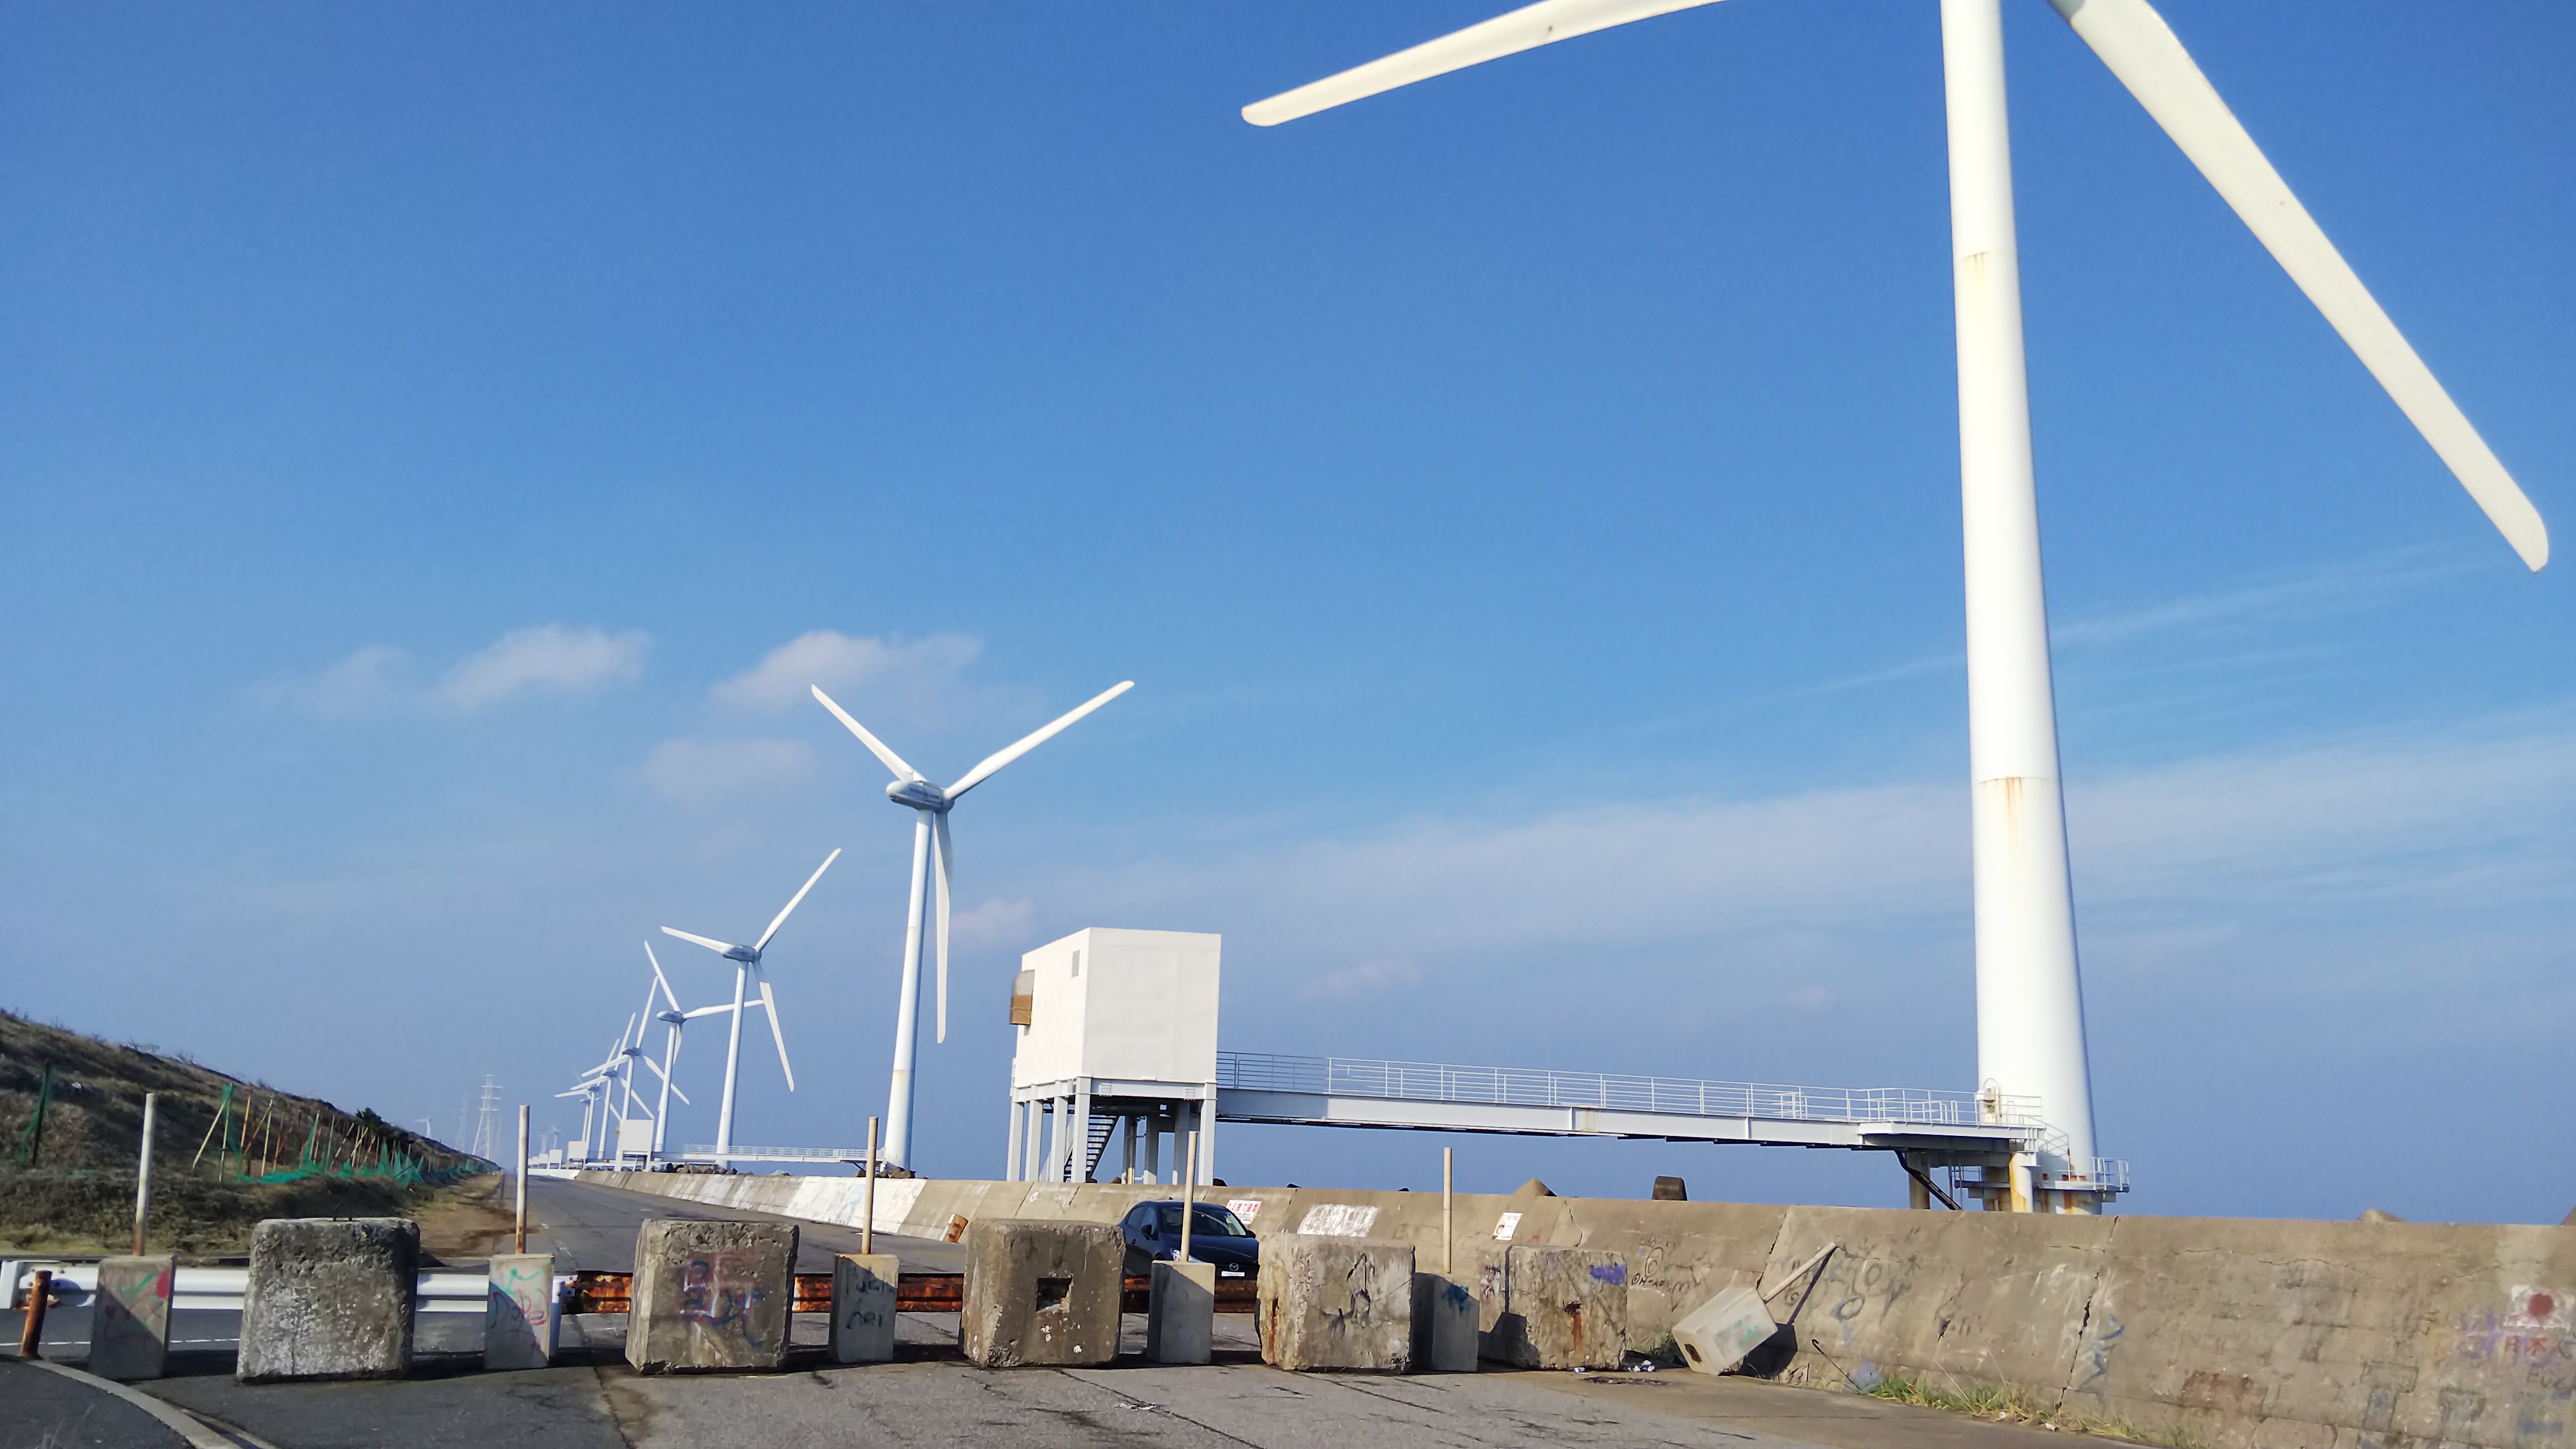 茨城県 神栖市 太平洋に向かう風力発電 18 12 04 いろんな発電所 探検記